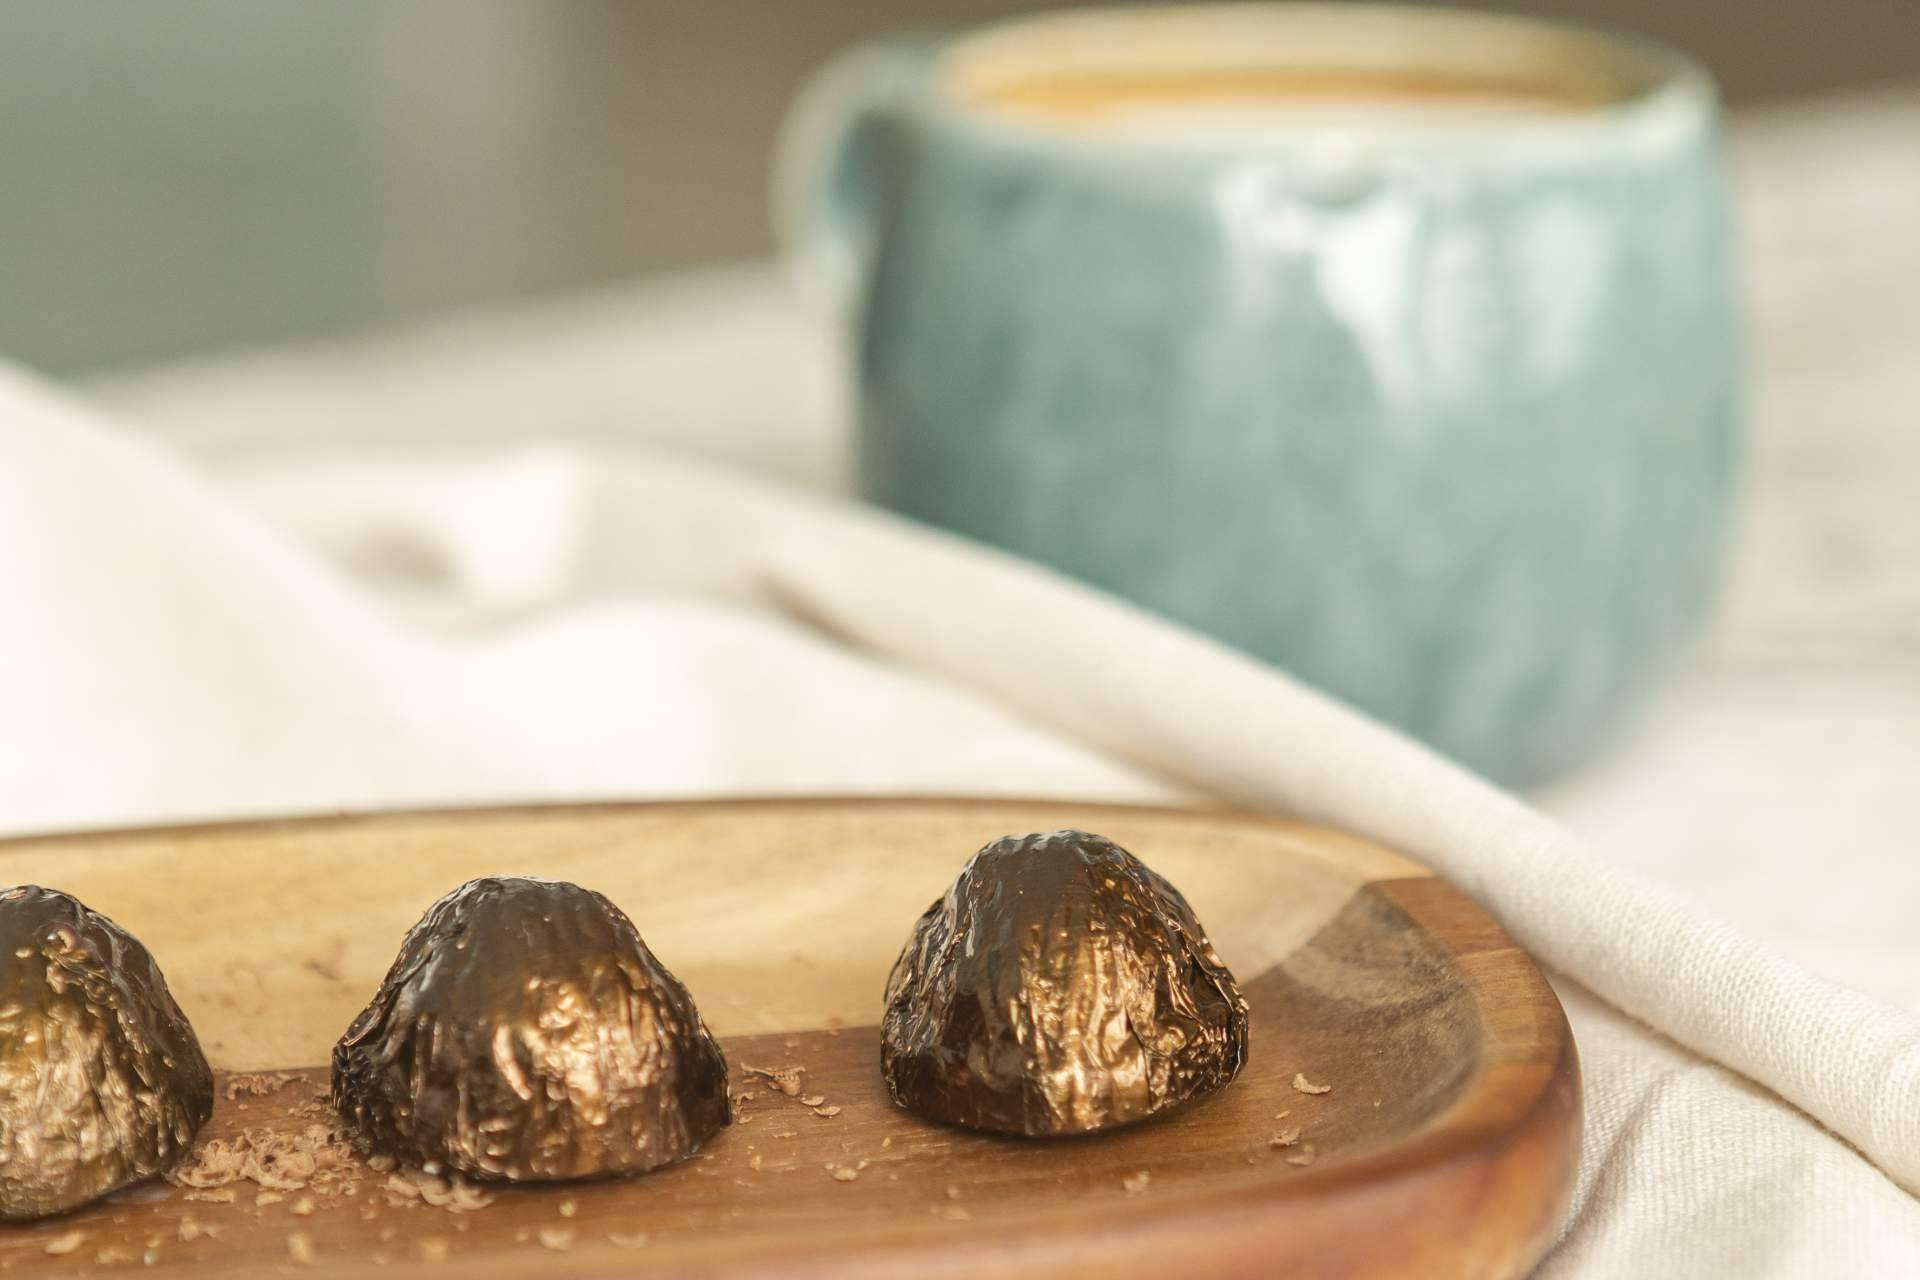  Nuche, la nueva marca de bombones de chocolate con forma de nuez que causa furor en Europa 